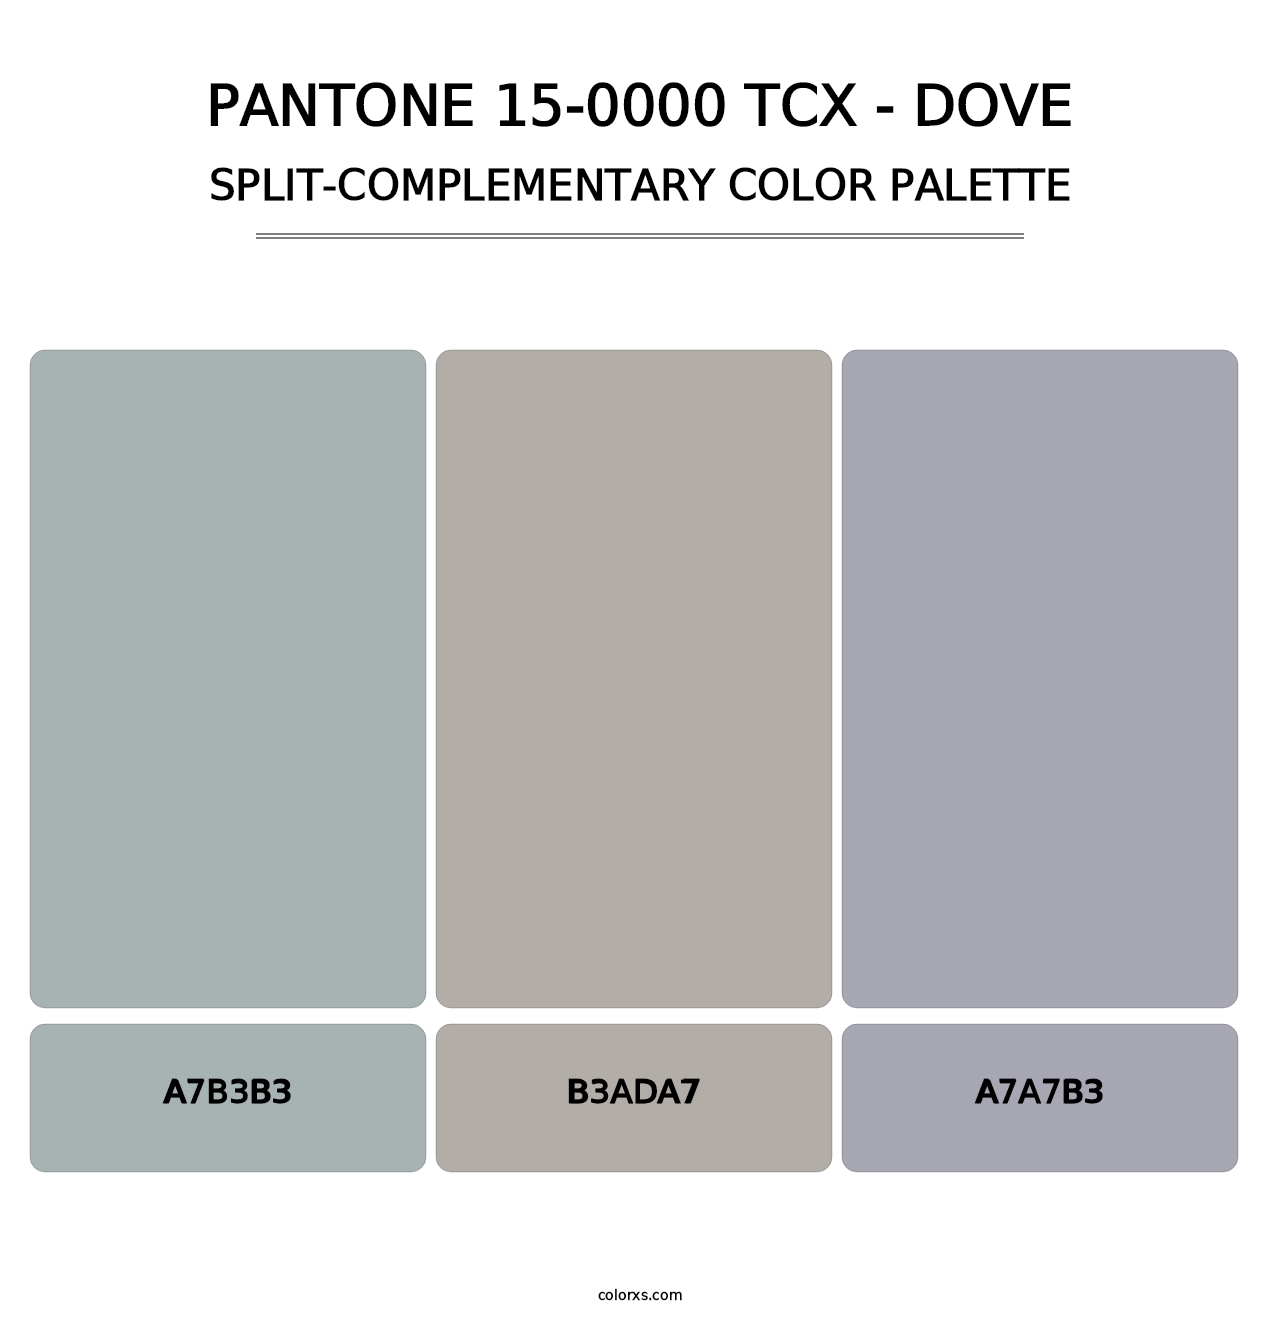 PANTONE 15-0000 TCX - Dove - Split-Complementary Color Palette